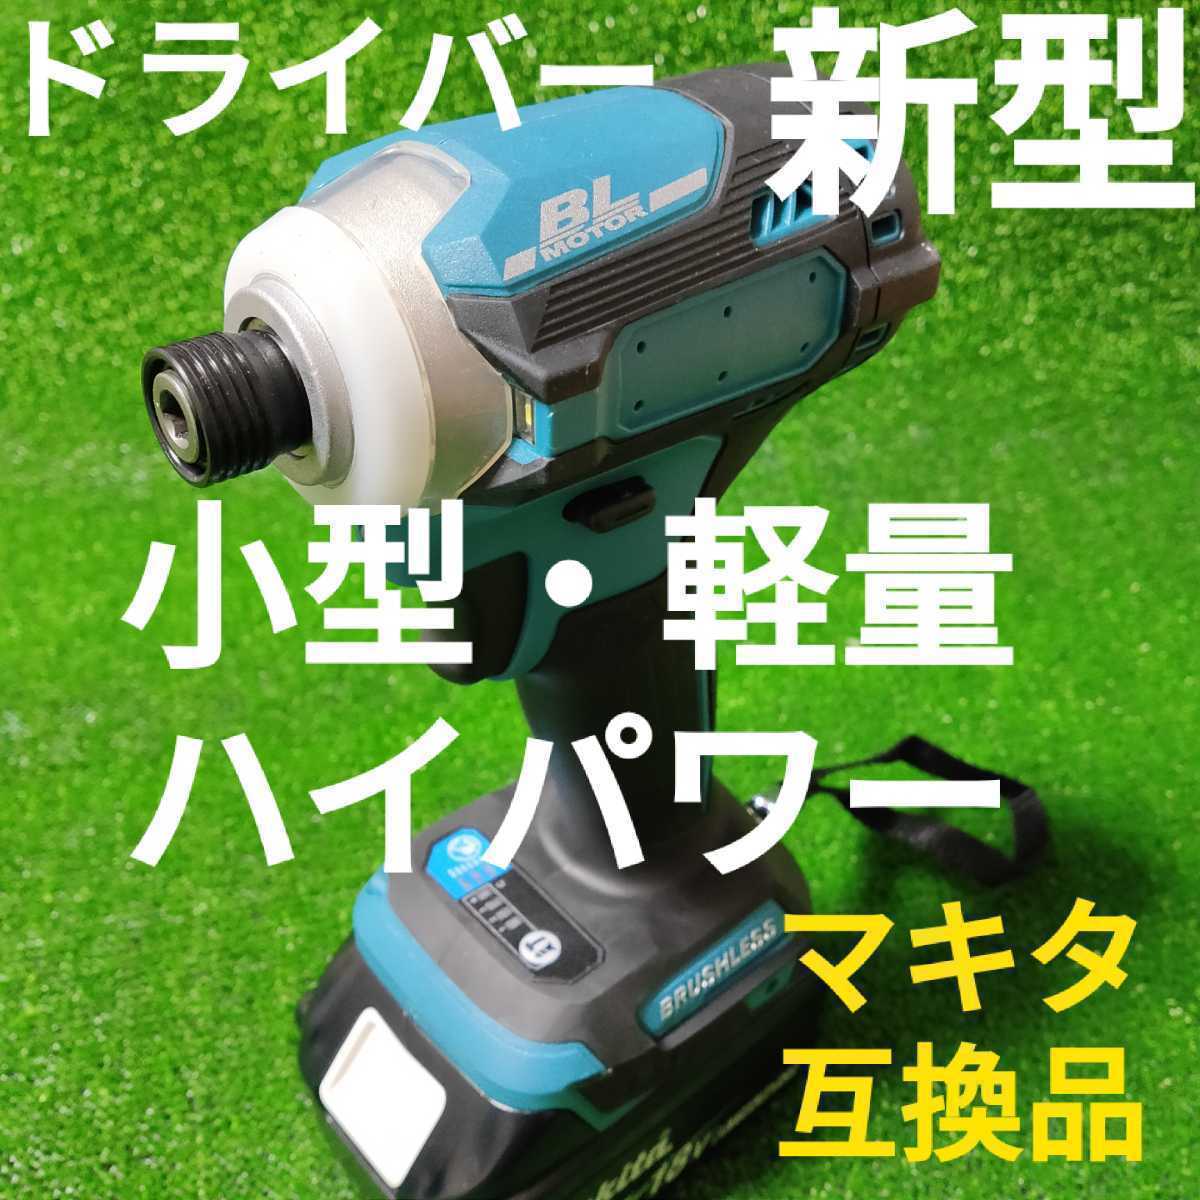 【小型・軽量・ハイパワー】インパクトドライバー (緑色) マキタ 互換品 18V